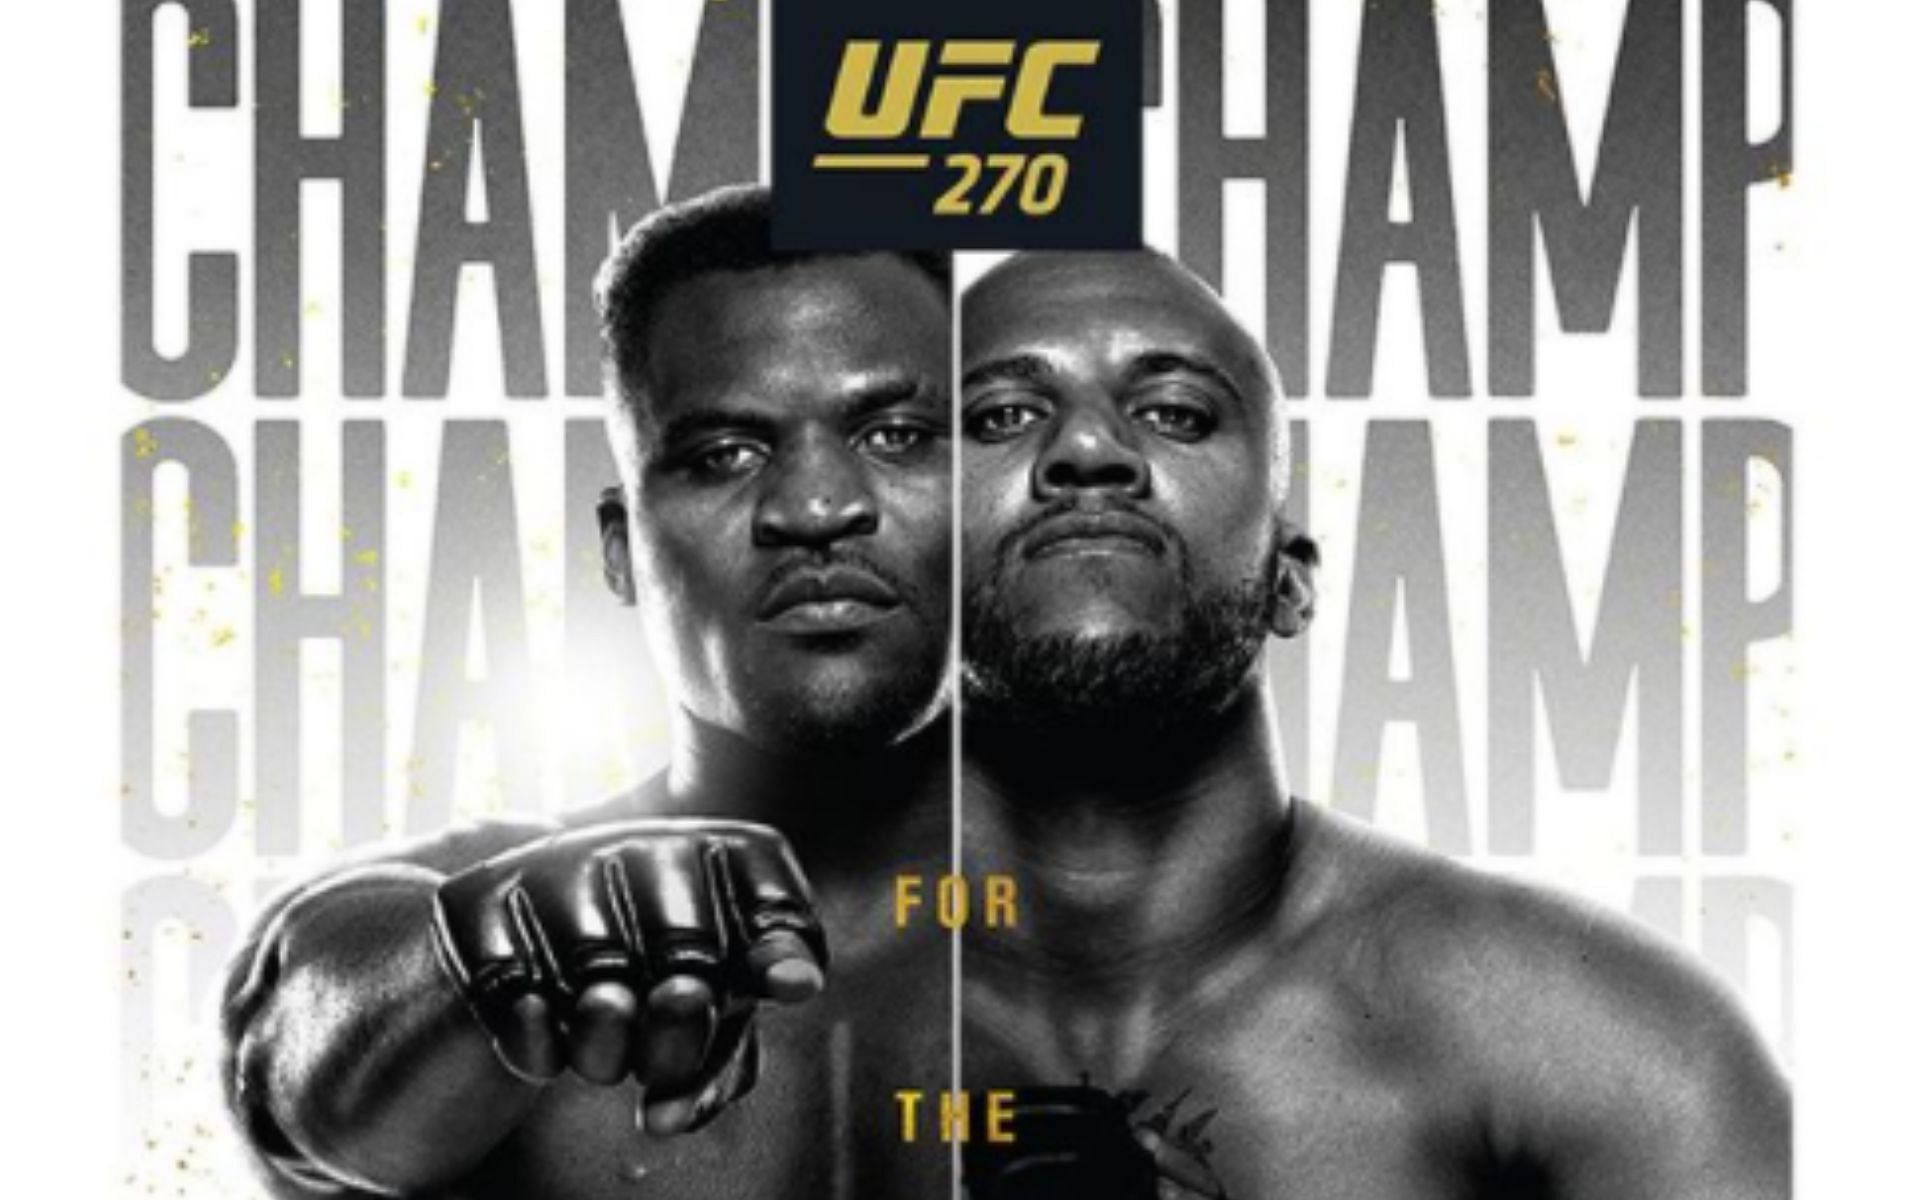 UFC 270 official poster via Instagram @ufc